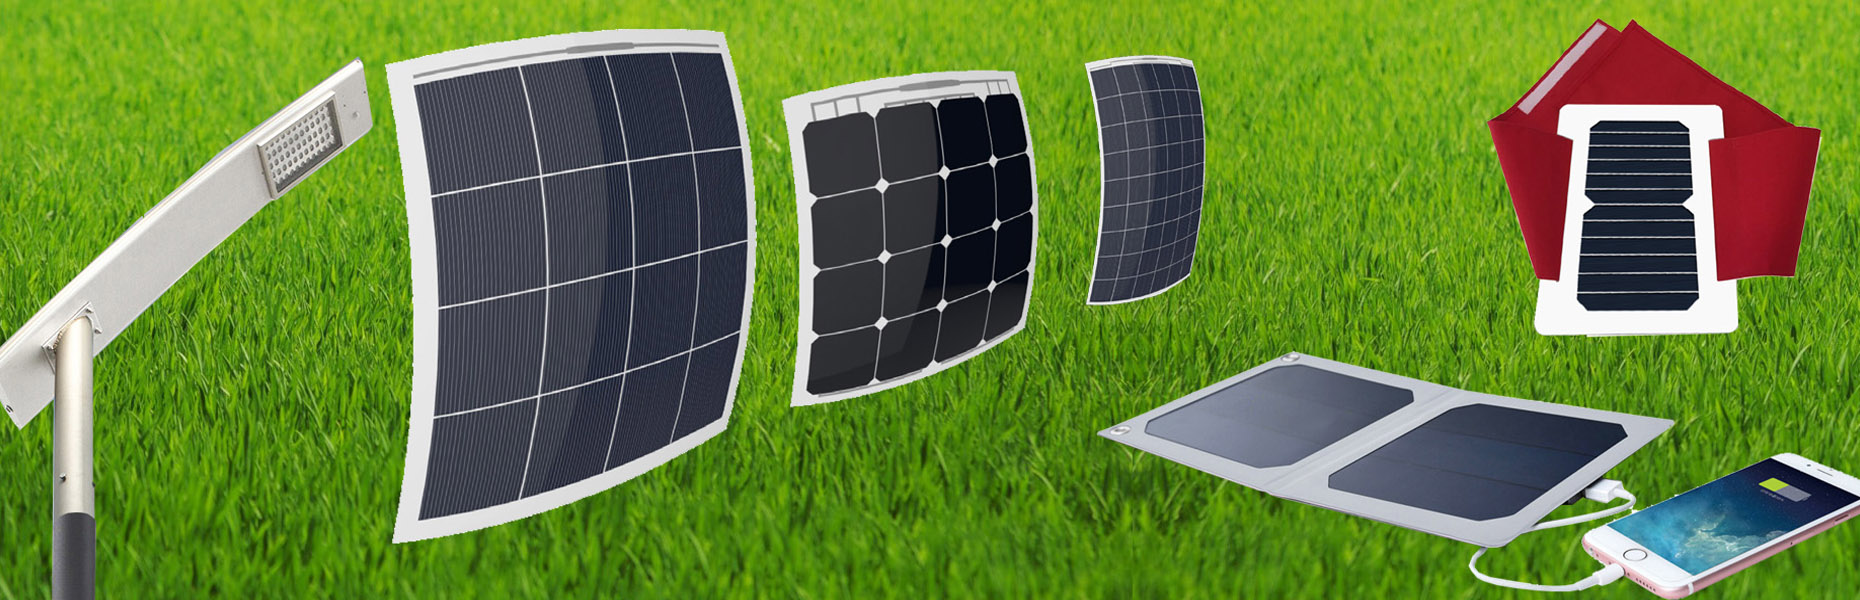 Solar_Panels_and_Accessories_dubai_uae